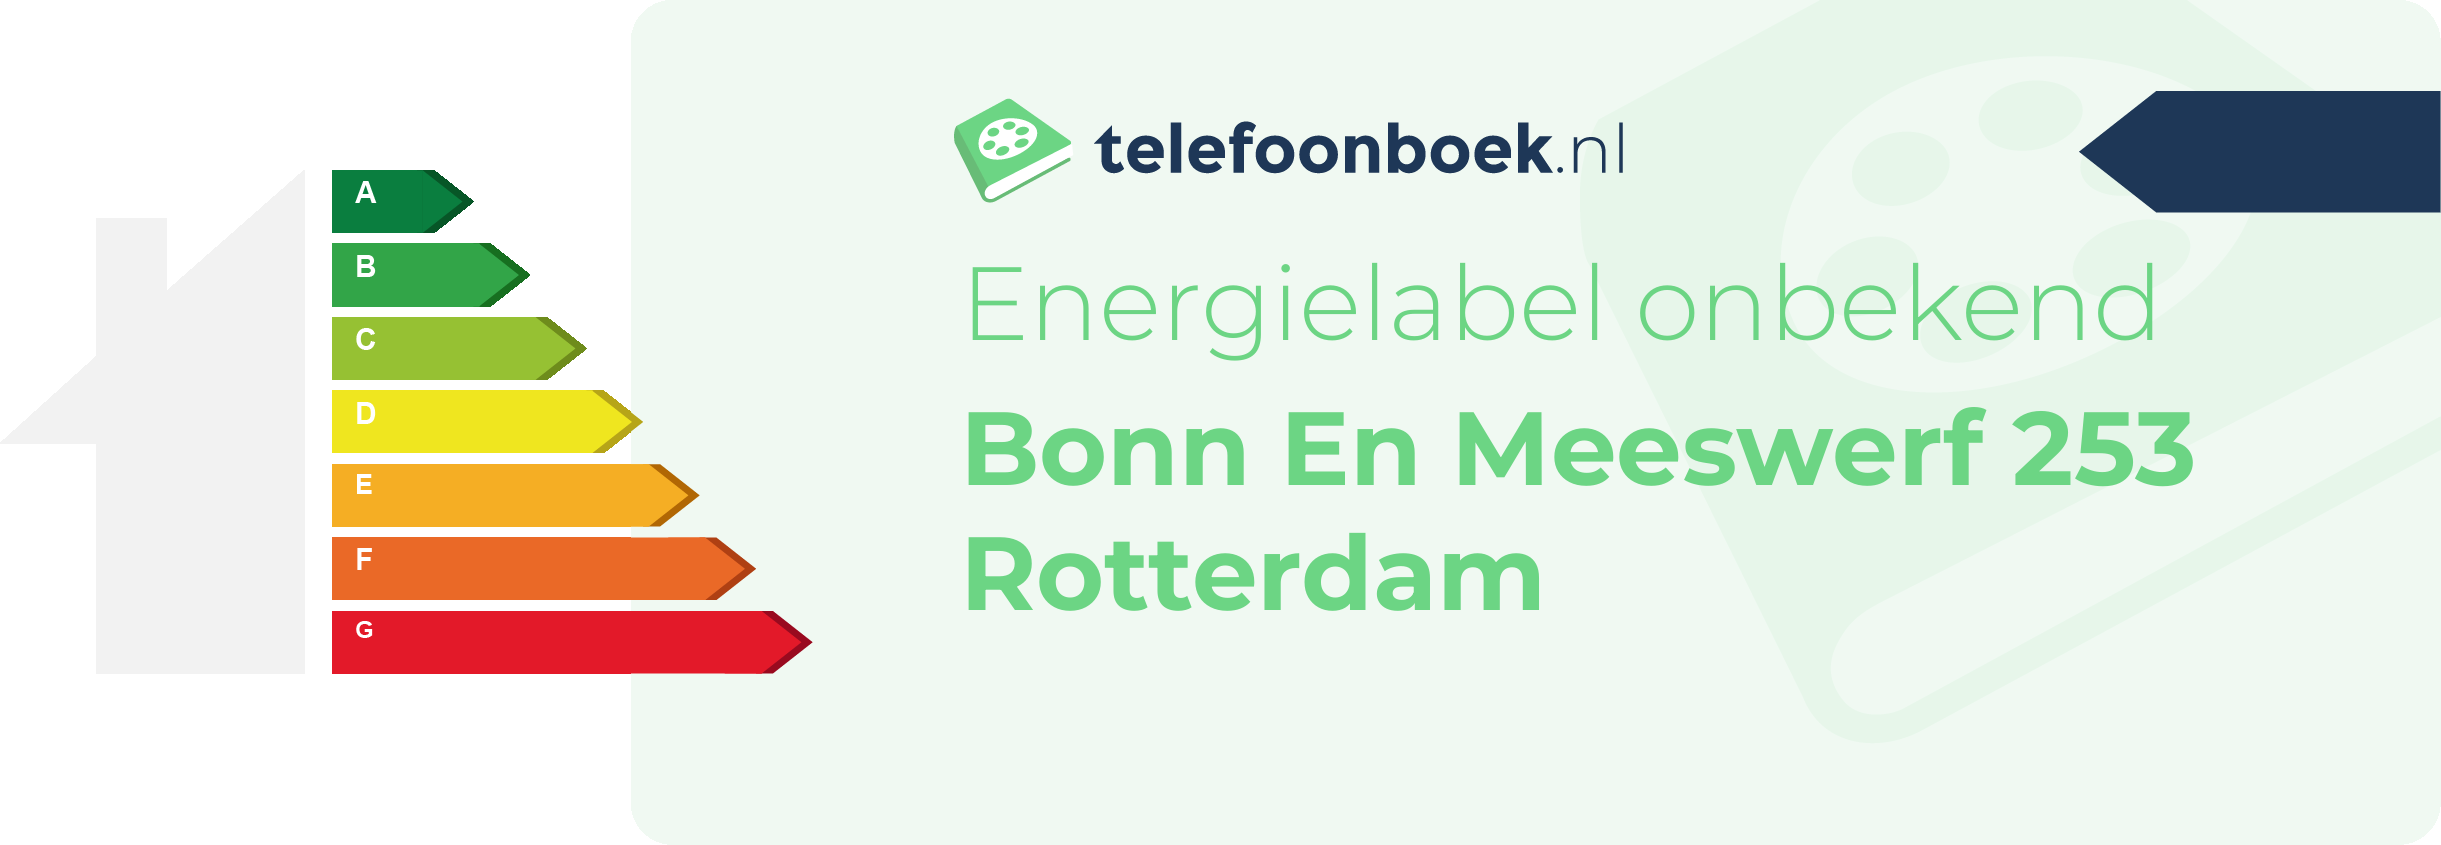 Energielabel Bonn En Meeswerf 253 Rotterdam